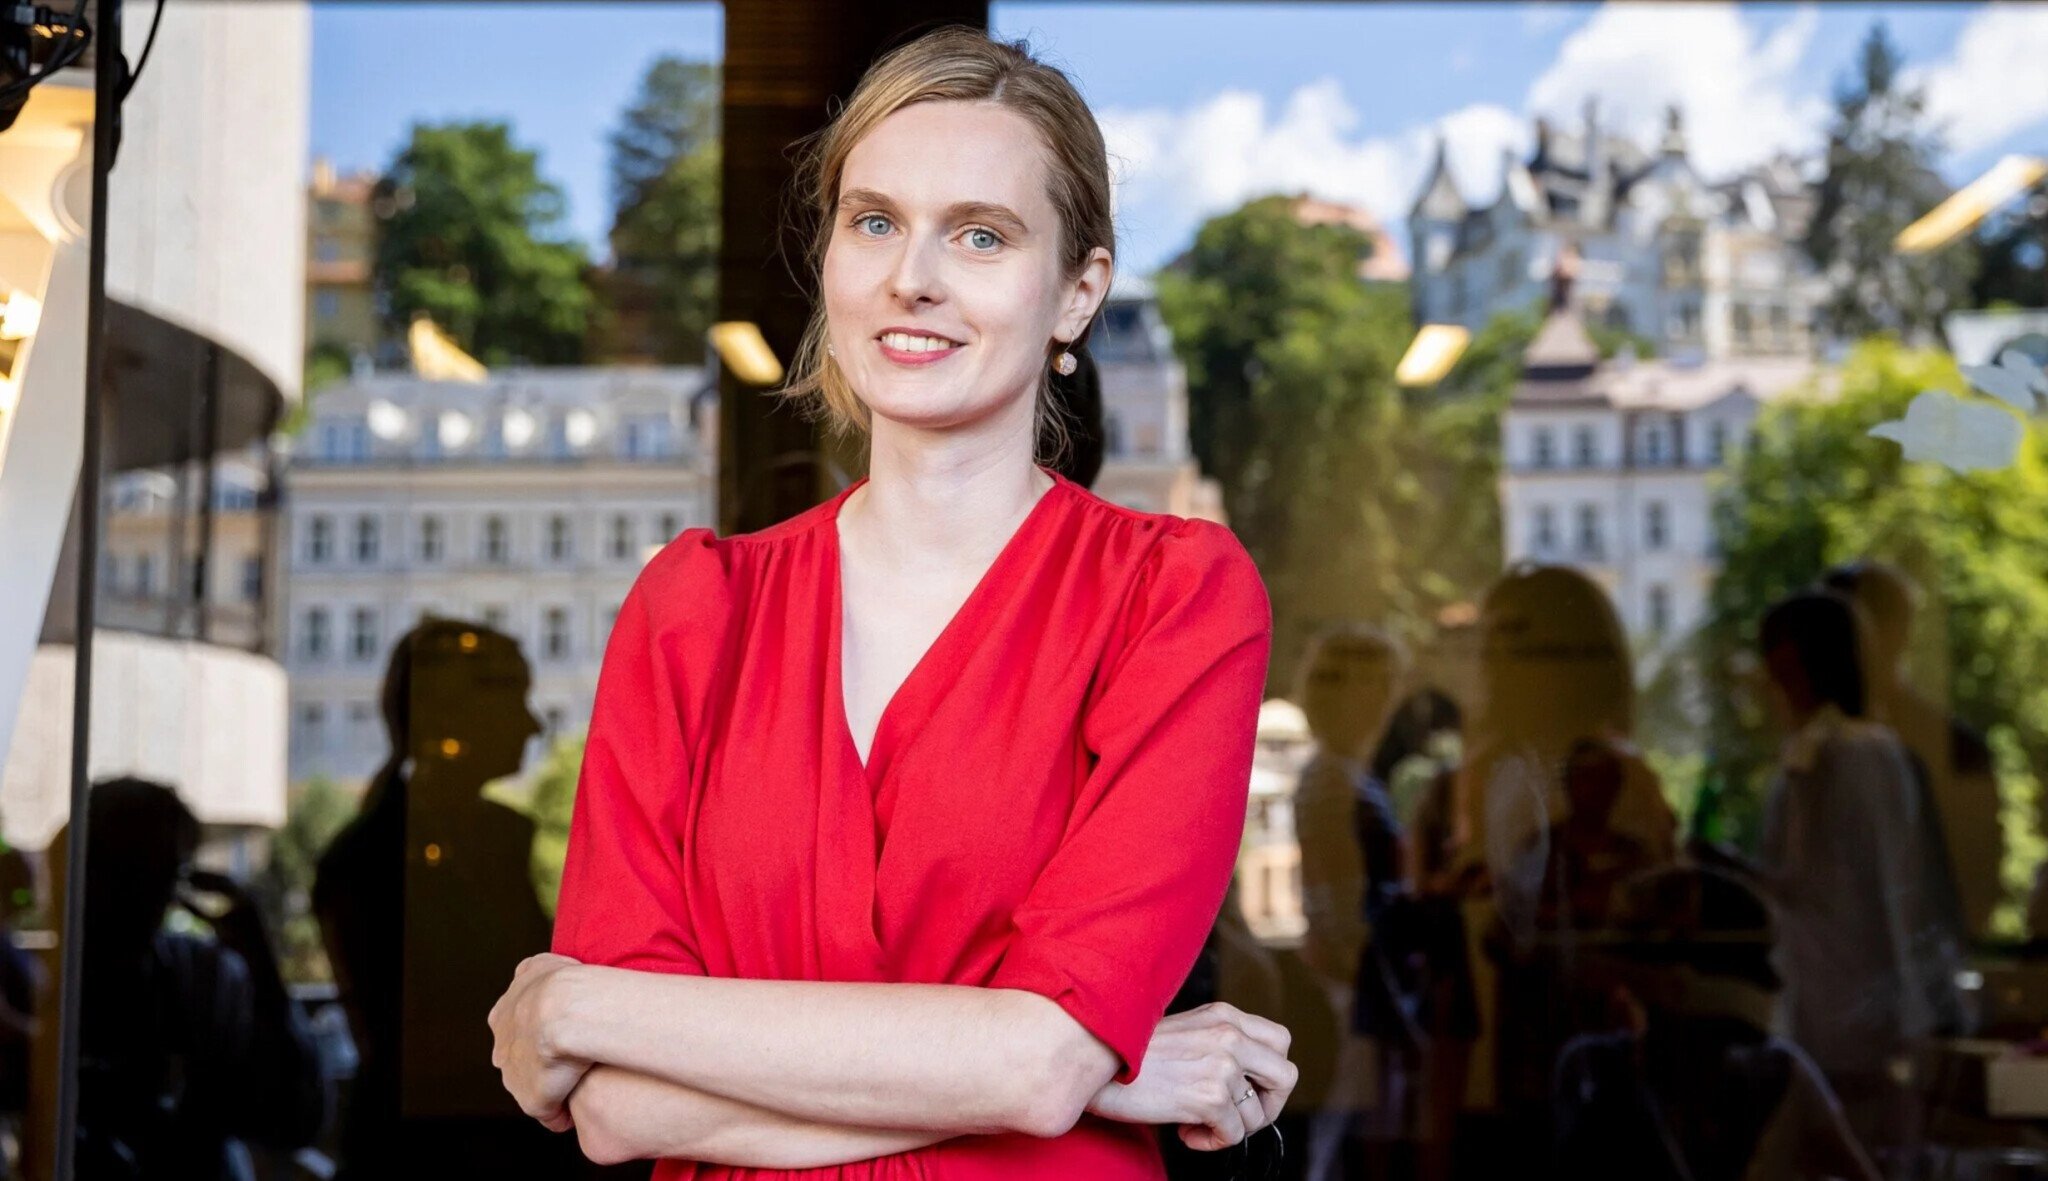 Označit se za feministku v Česku kariéře uškodí, říká oceňovaná scenáristka